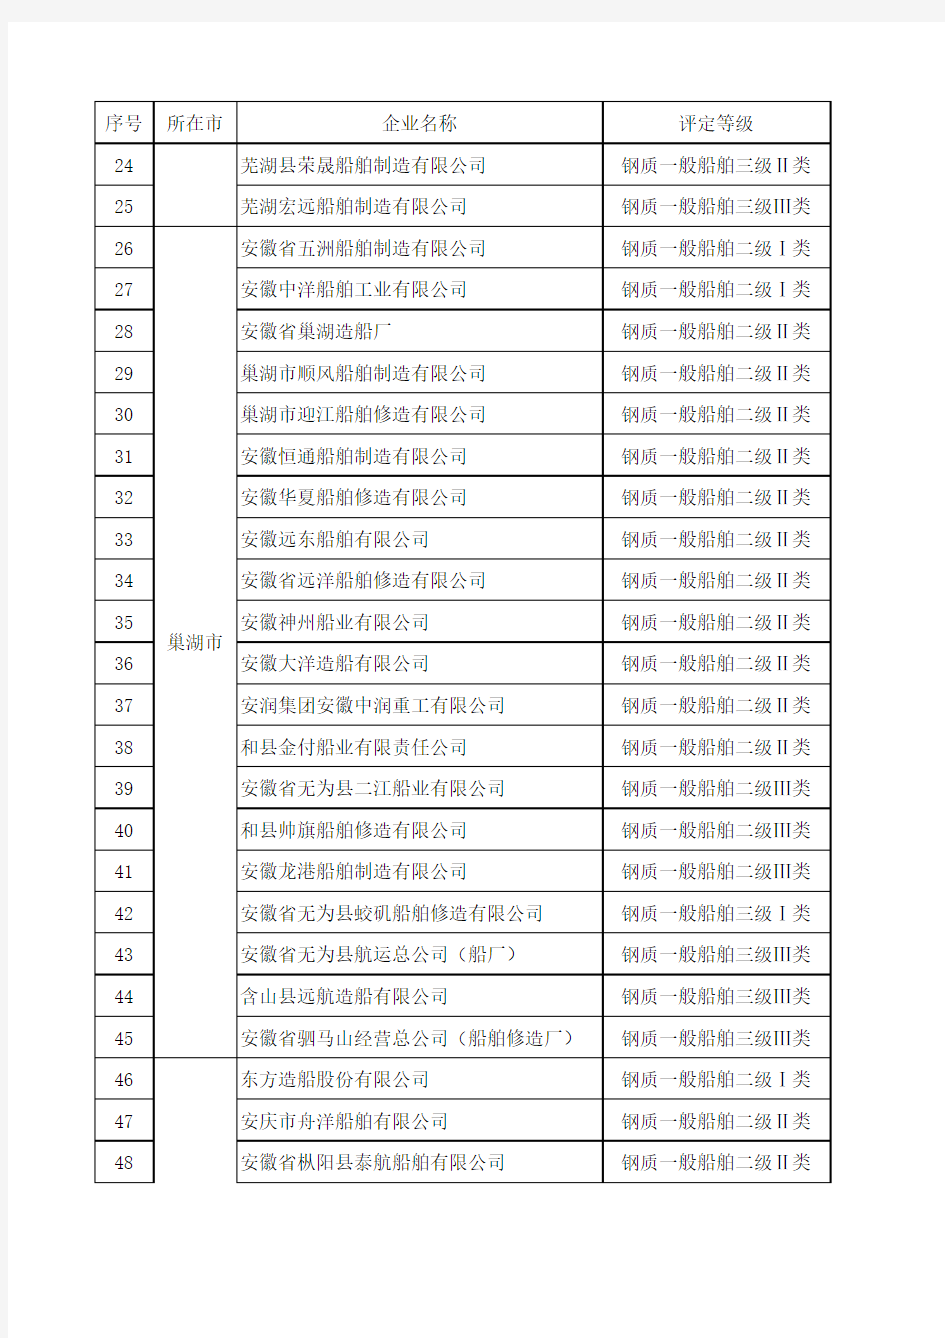 安徽省等级评价合格船舶生产企业名单xls